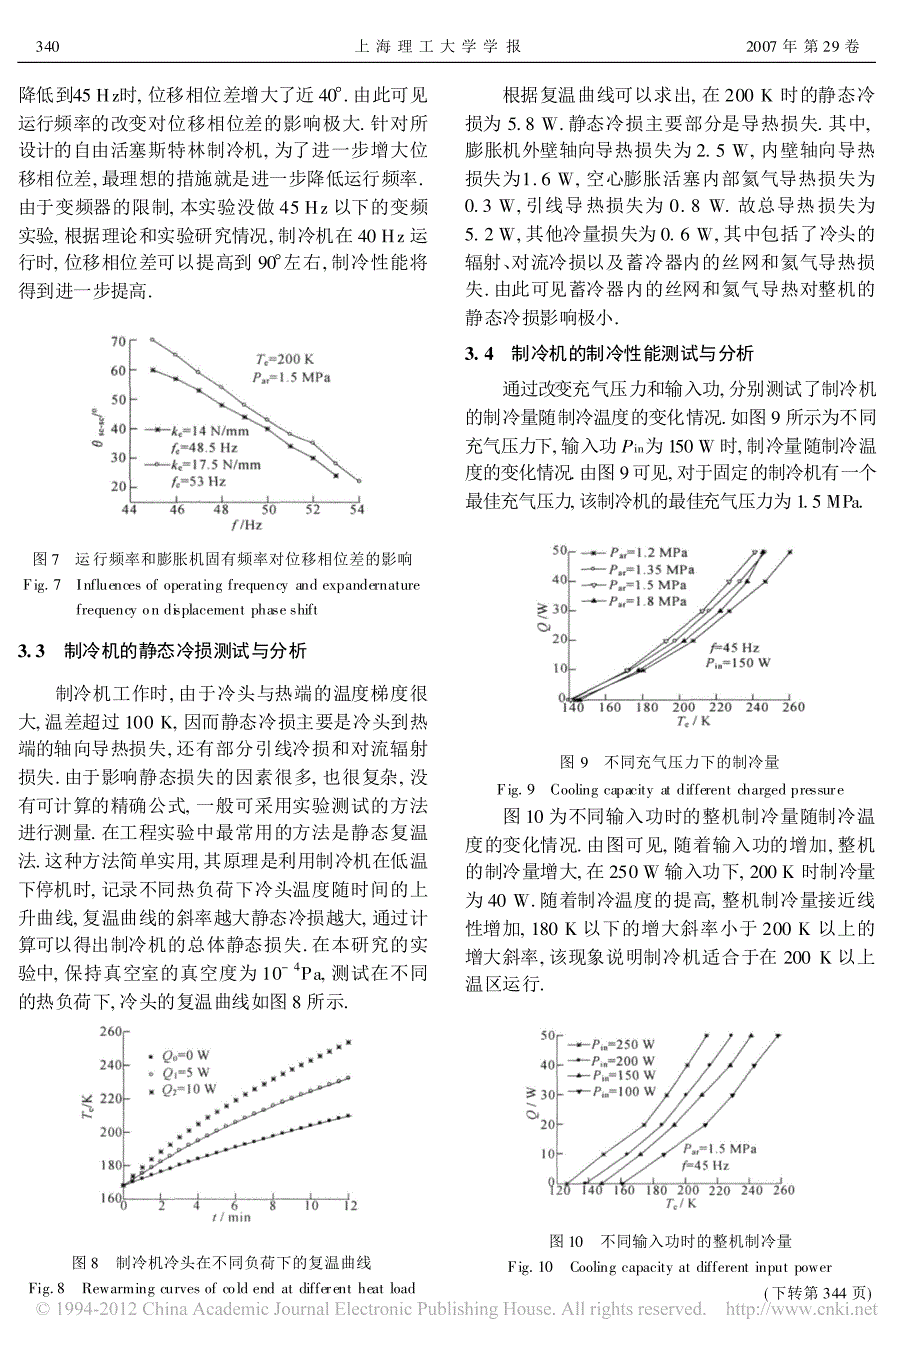 200K_40W自由活塞斯特林制冷机的实验研究_陈曦(1)_第4页